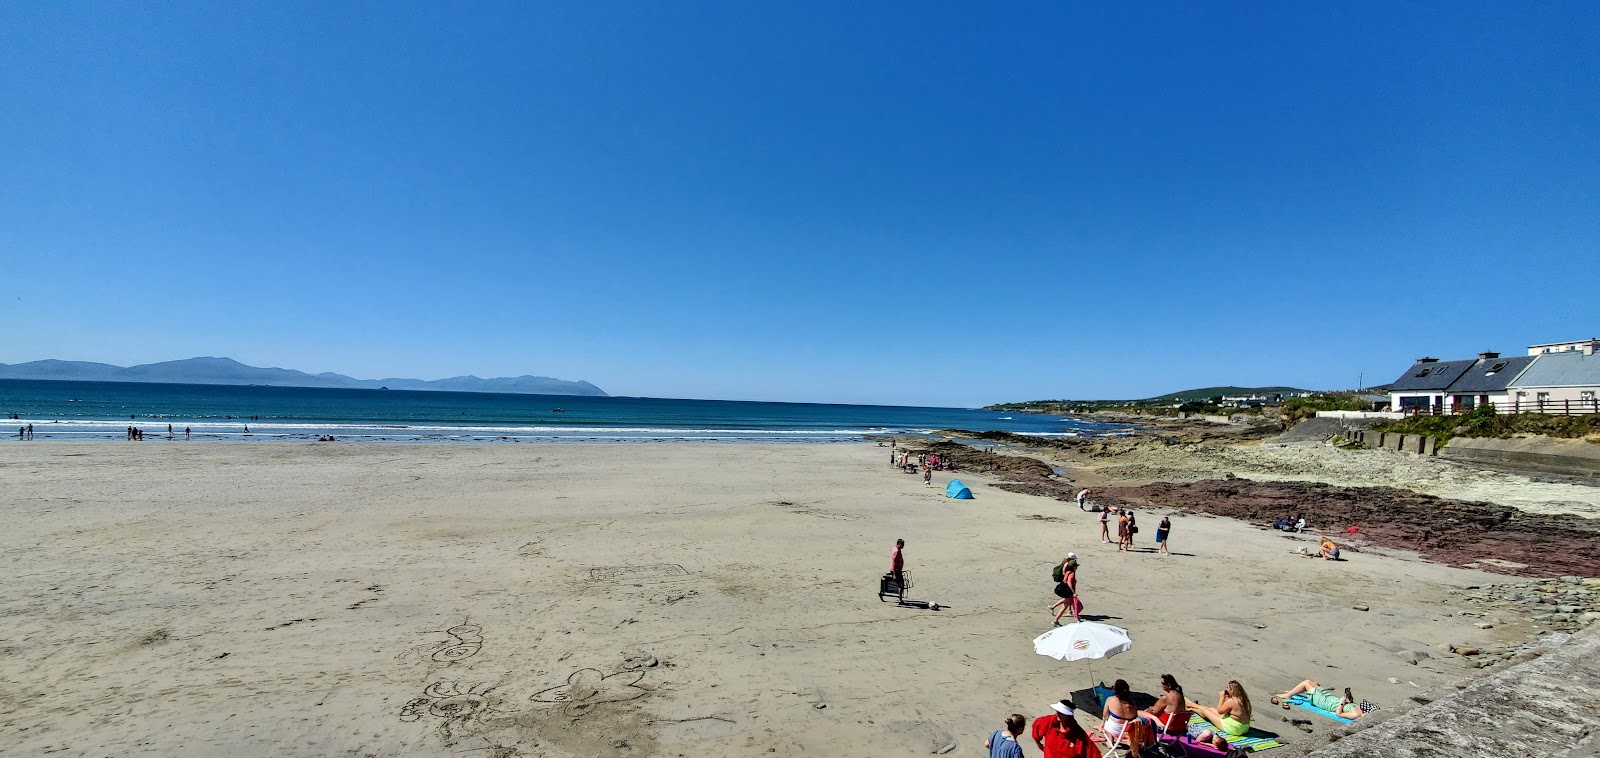 Fotografie cu Ballyheigue Beach cu o suprafață de apa pură turcoaz